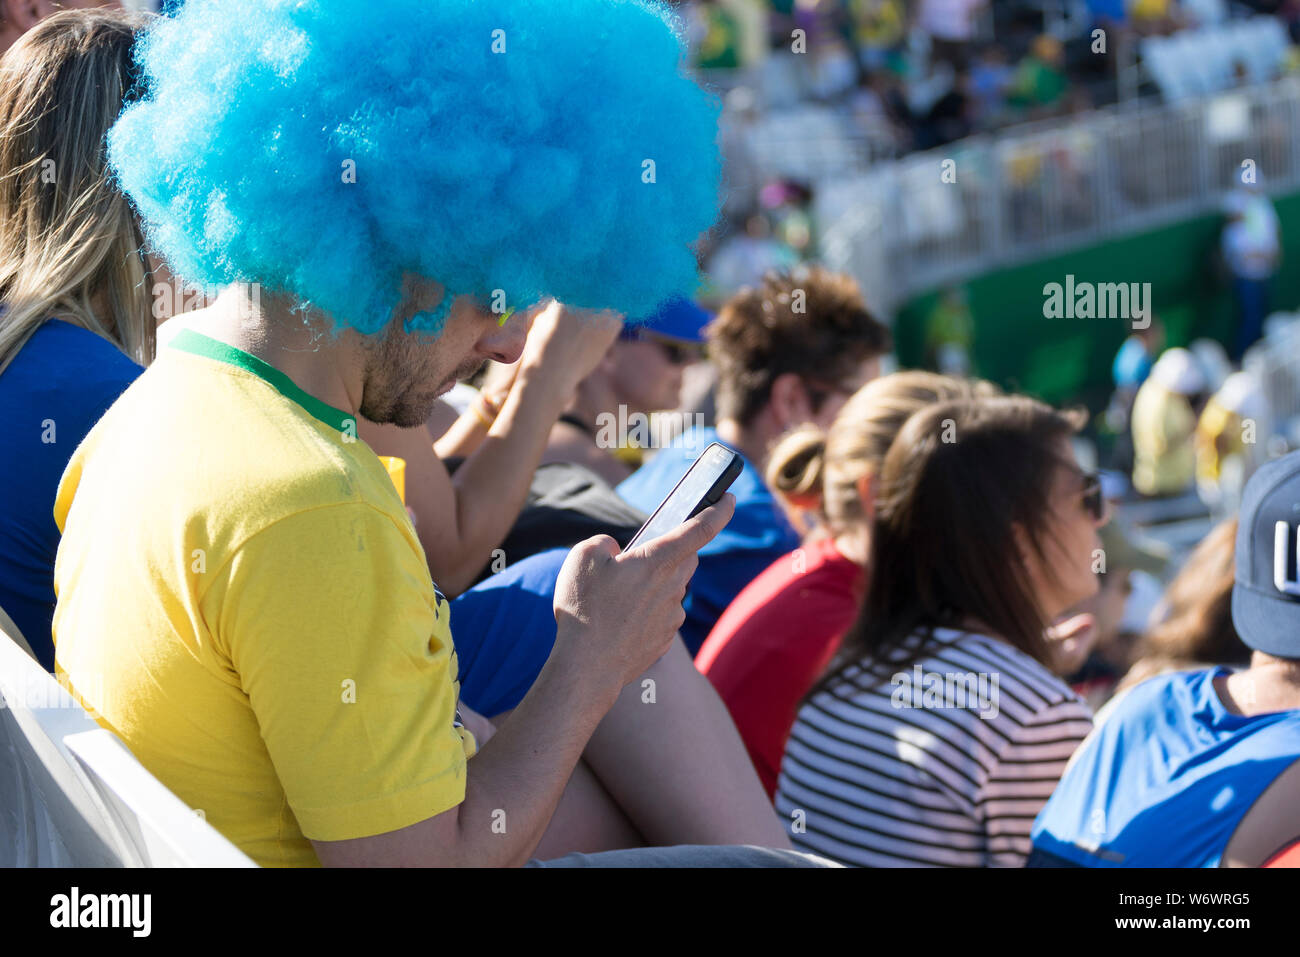 Brasilianischen Anhänger mit blauen Perücke auf, auf sein Handy statt Was ist los im Stadion mit Masse im Hintergrund Stockfoto